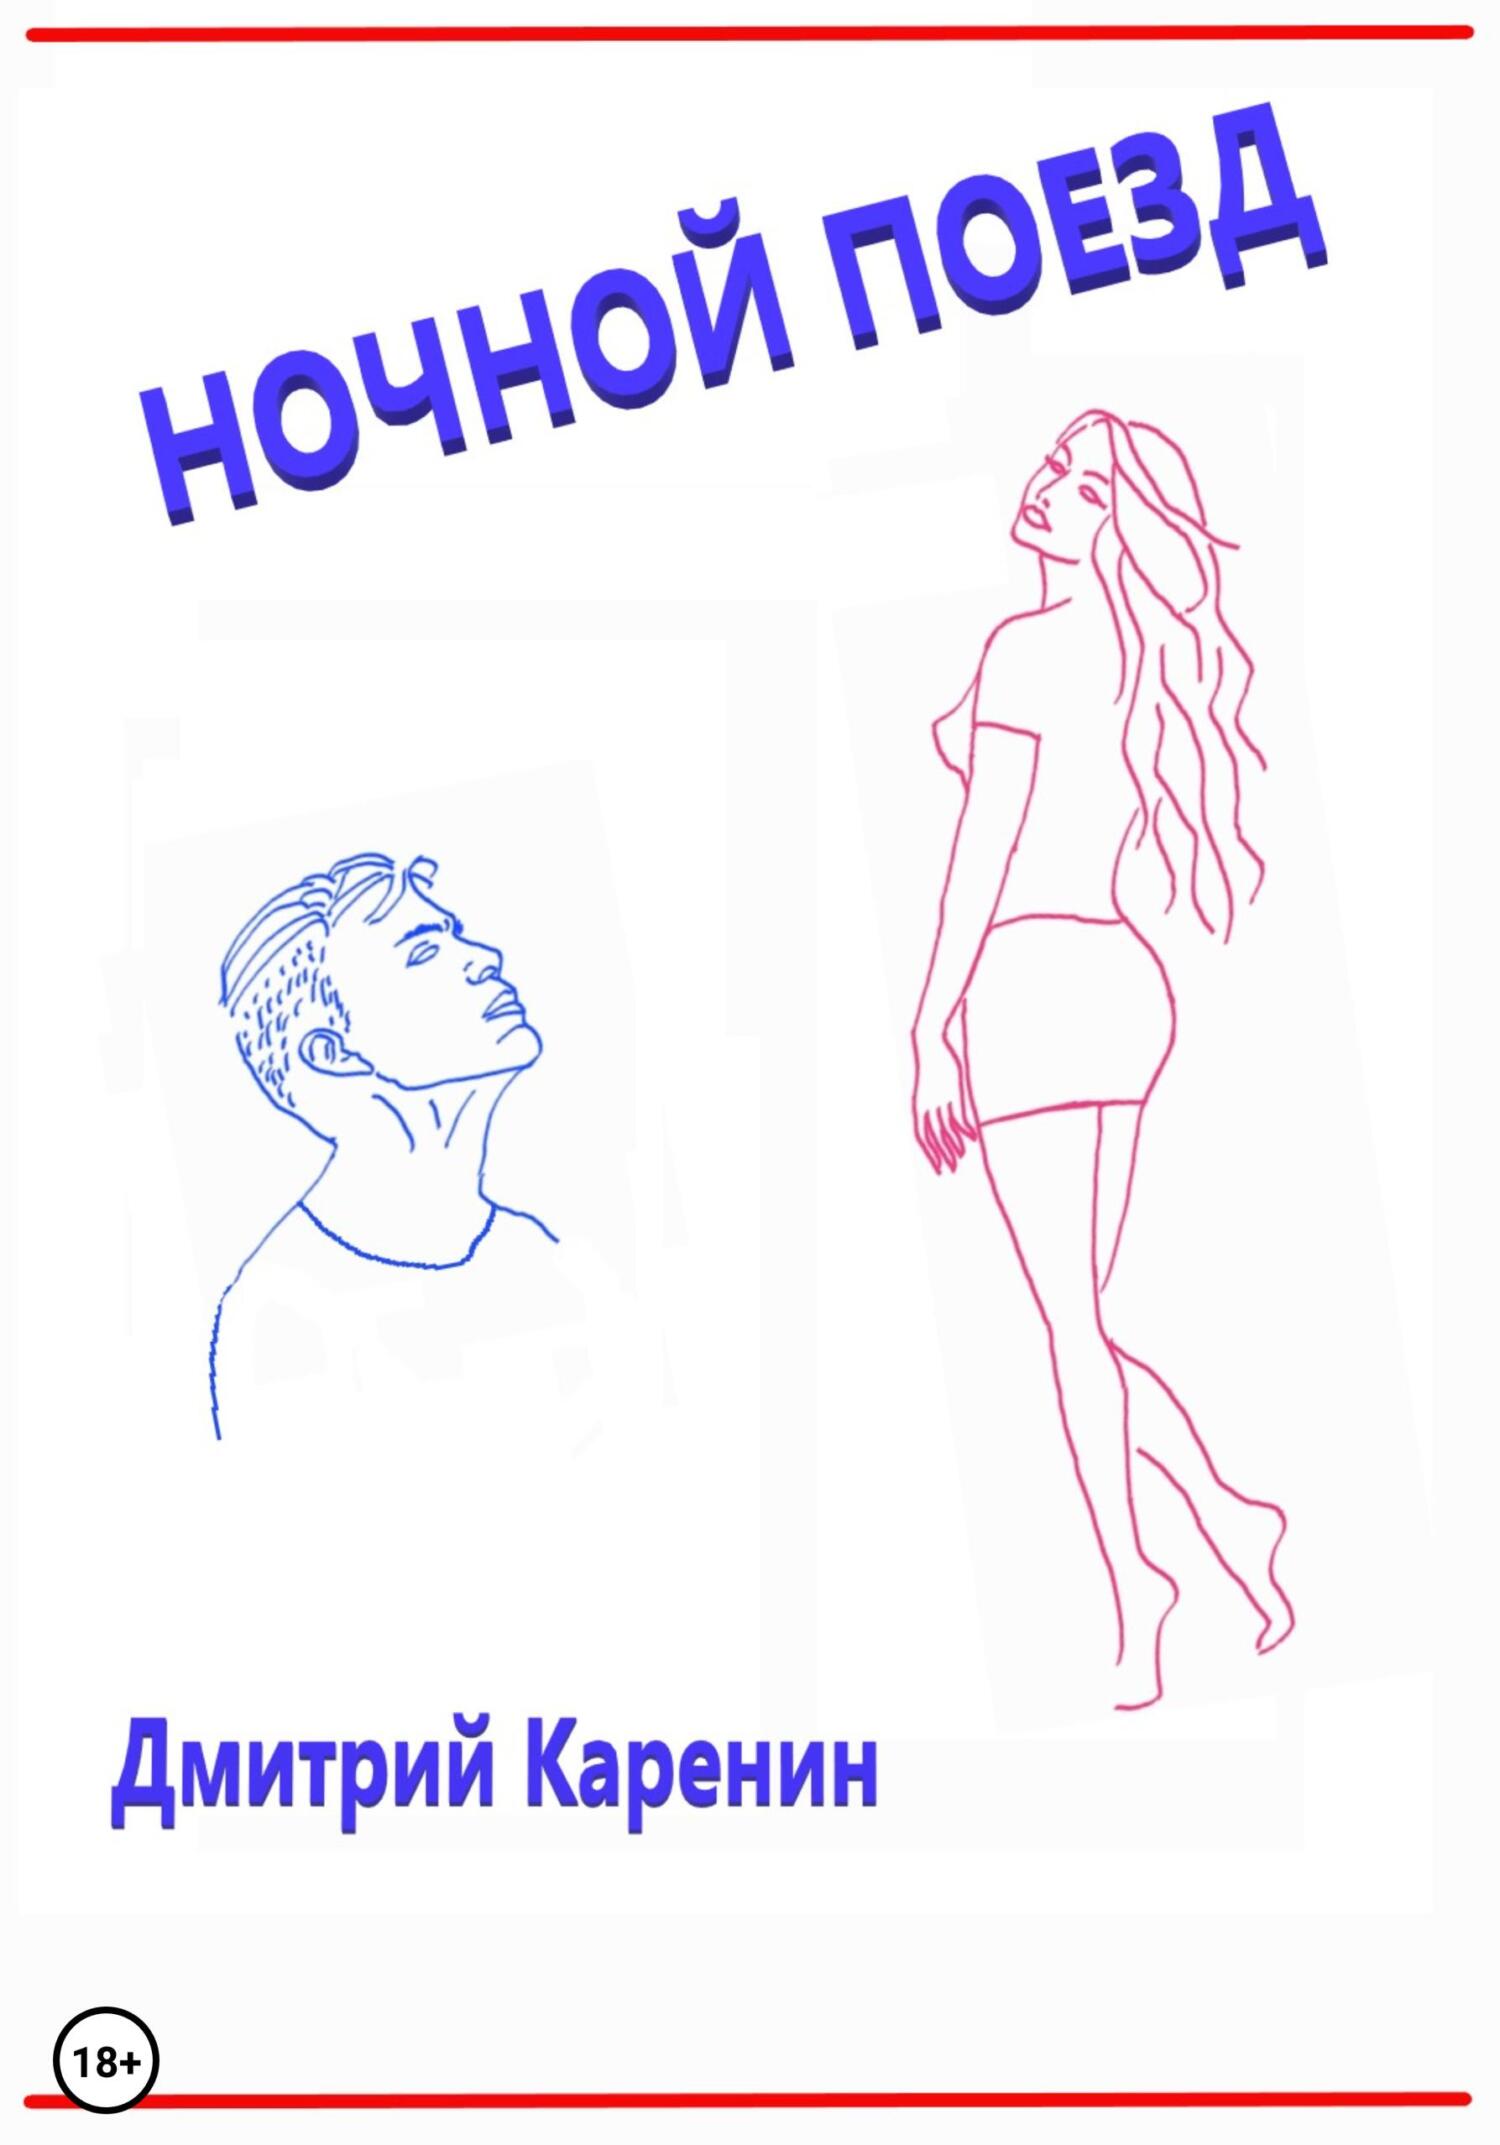 Ночной поезд, , Дмитрий Каренин – скачать книгу бесплатно fb2, epub, pdf на  ЛитРес